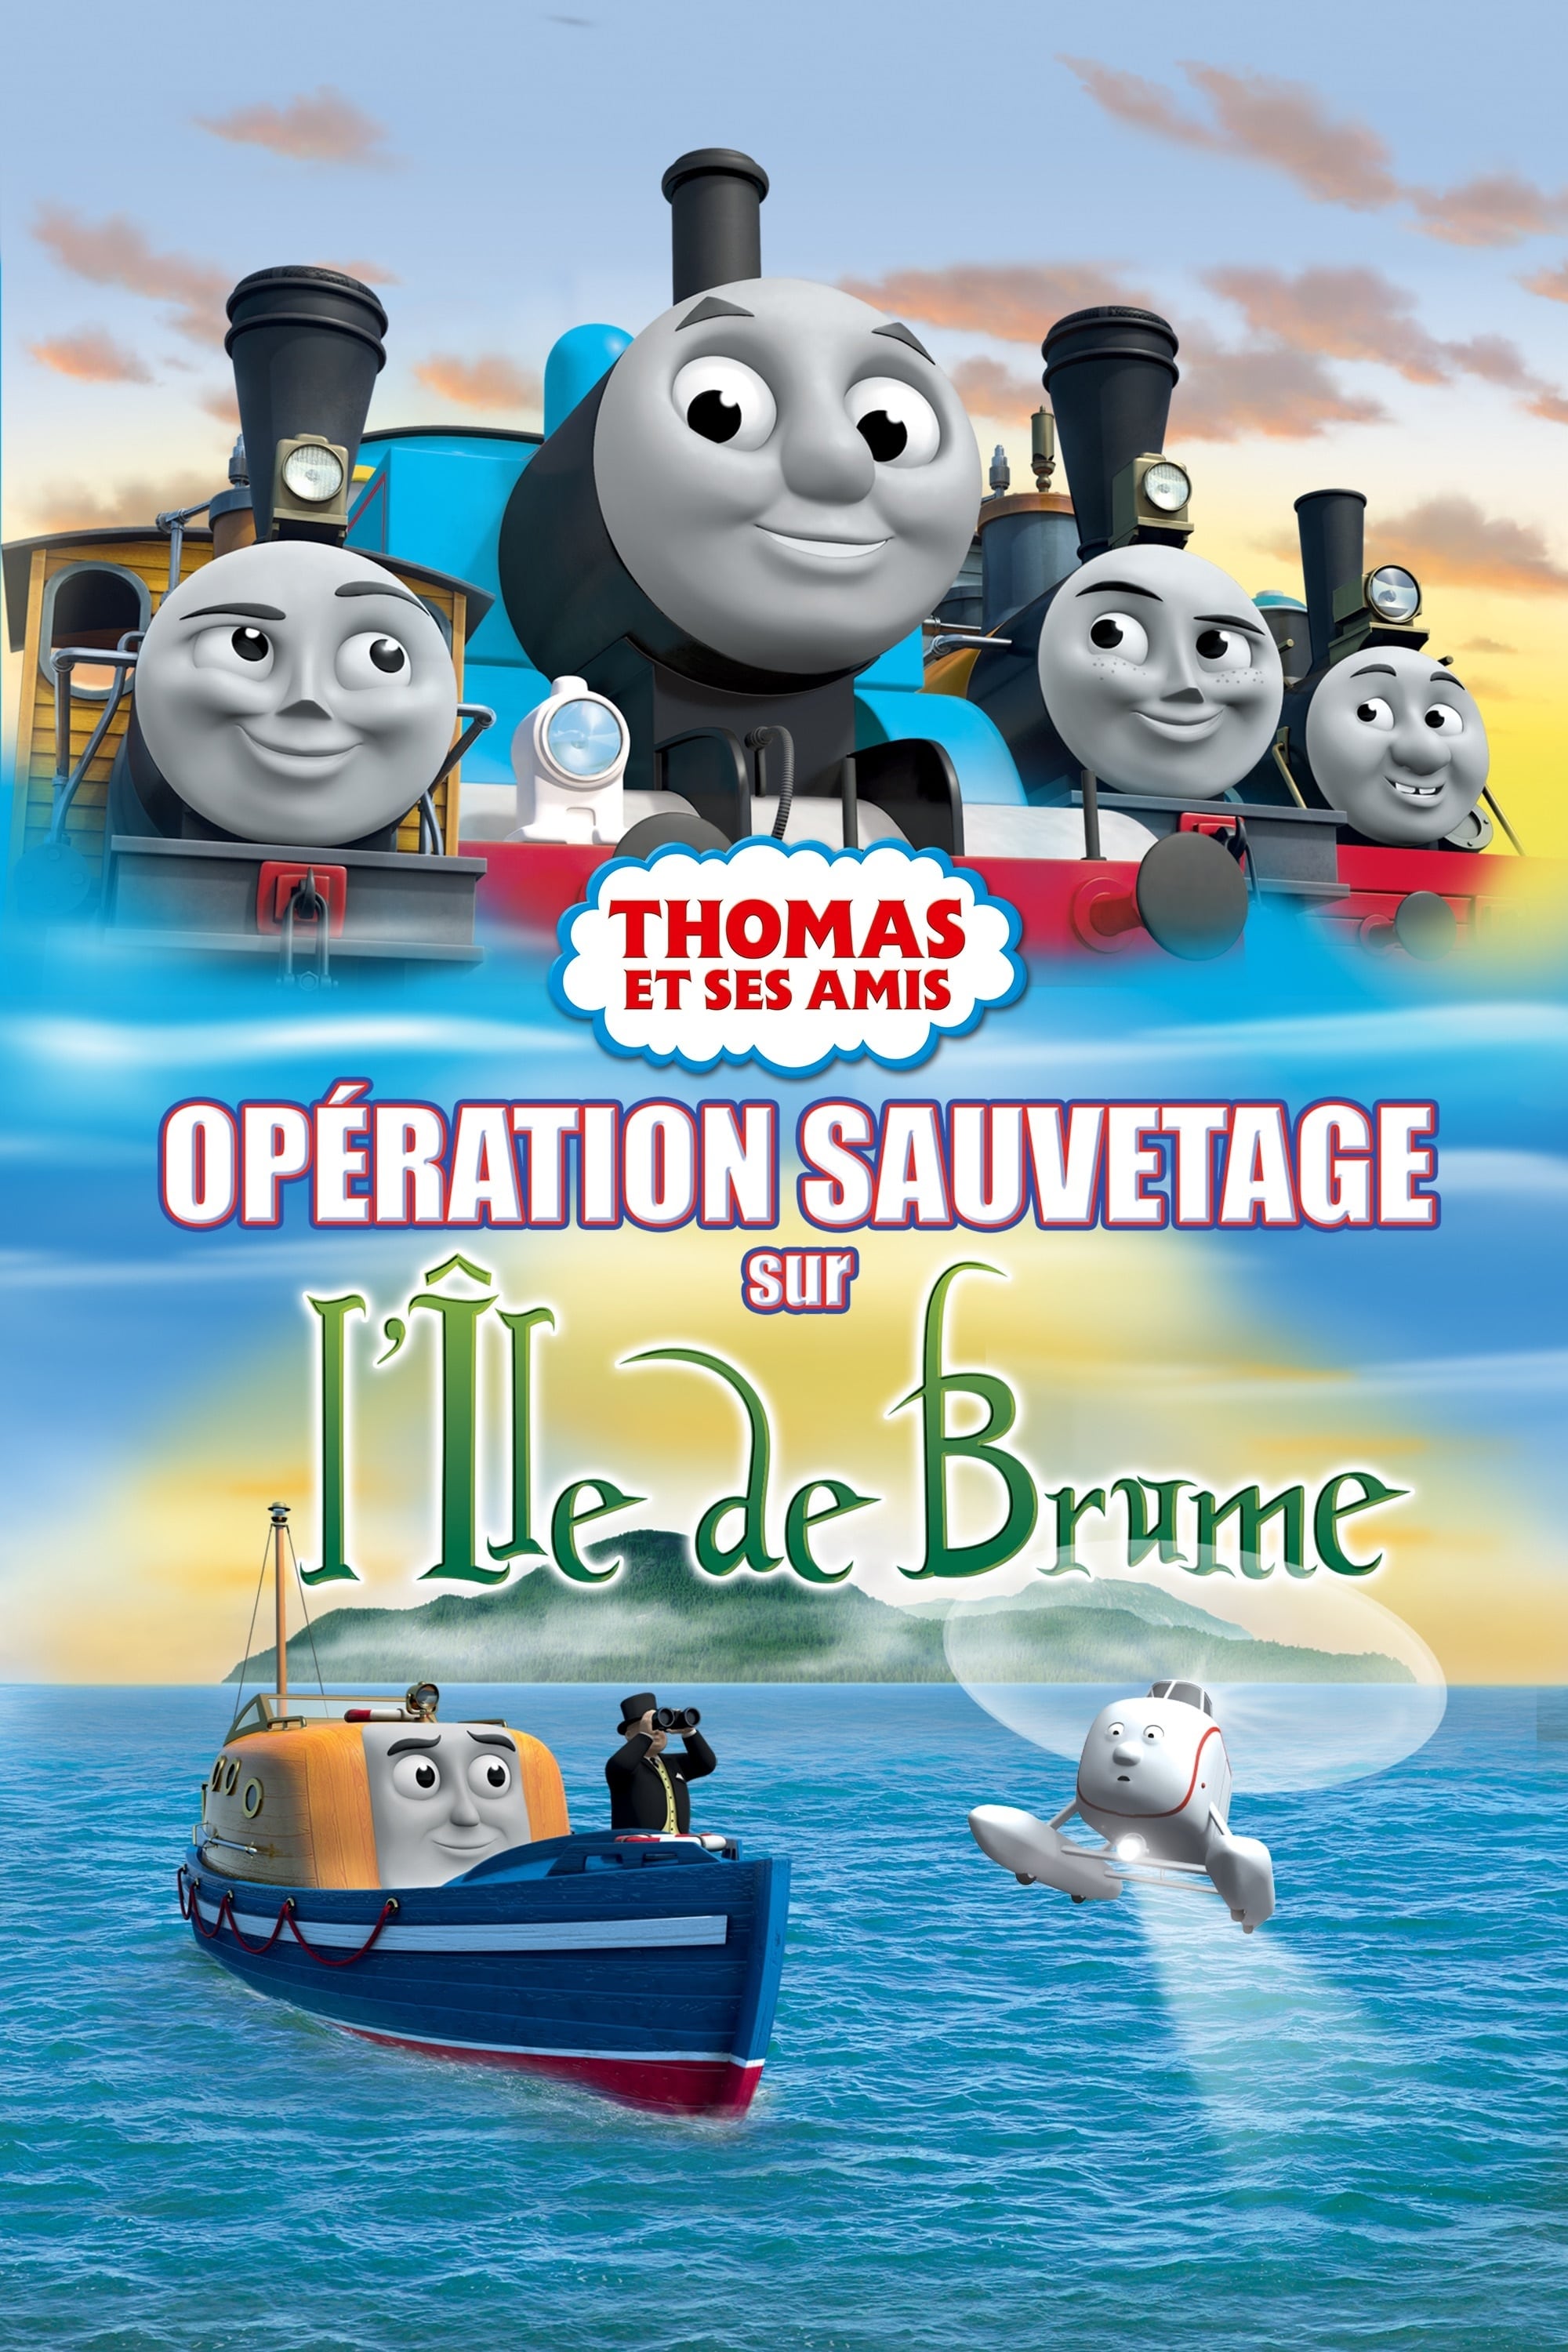 Thomas et ses amis - Opération sauvetage sur l’ile de brum‪e